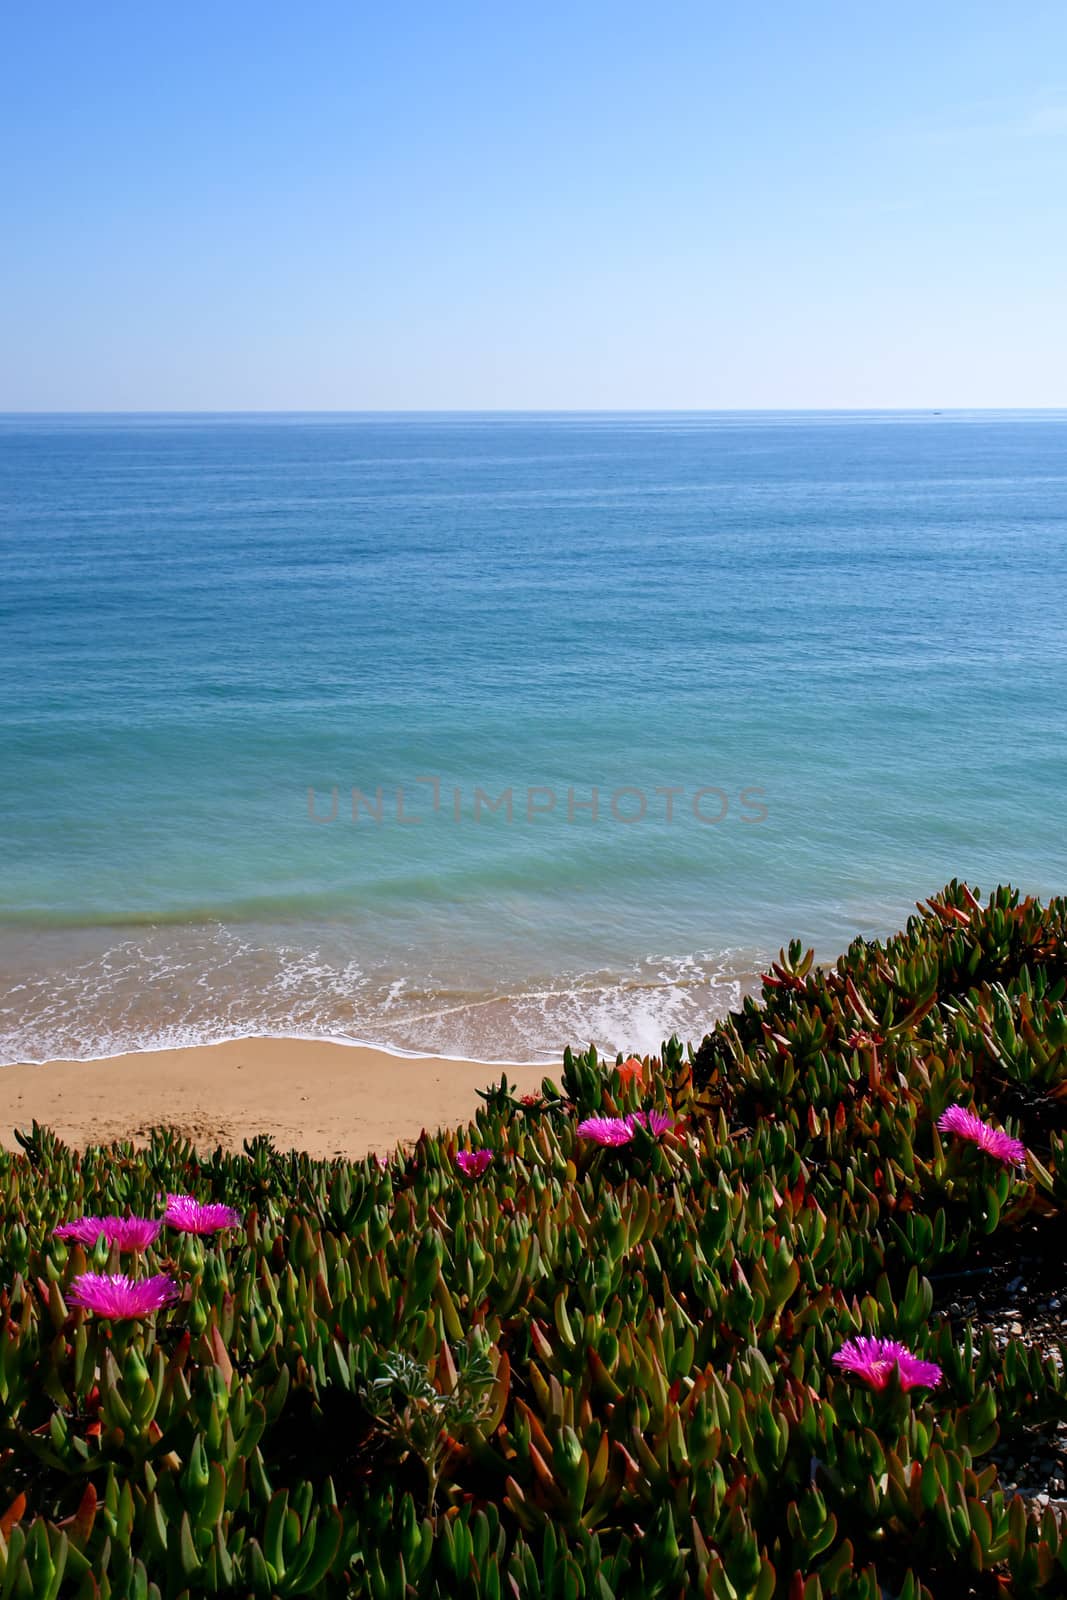 Algarve cliff coast scenario, whit "Carpobrotus edulis" plant specie over hedge